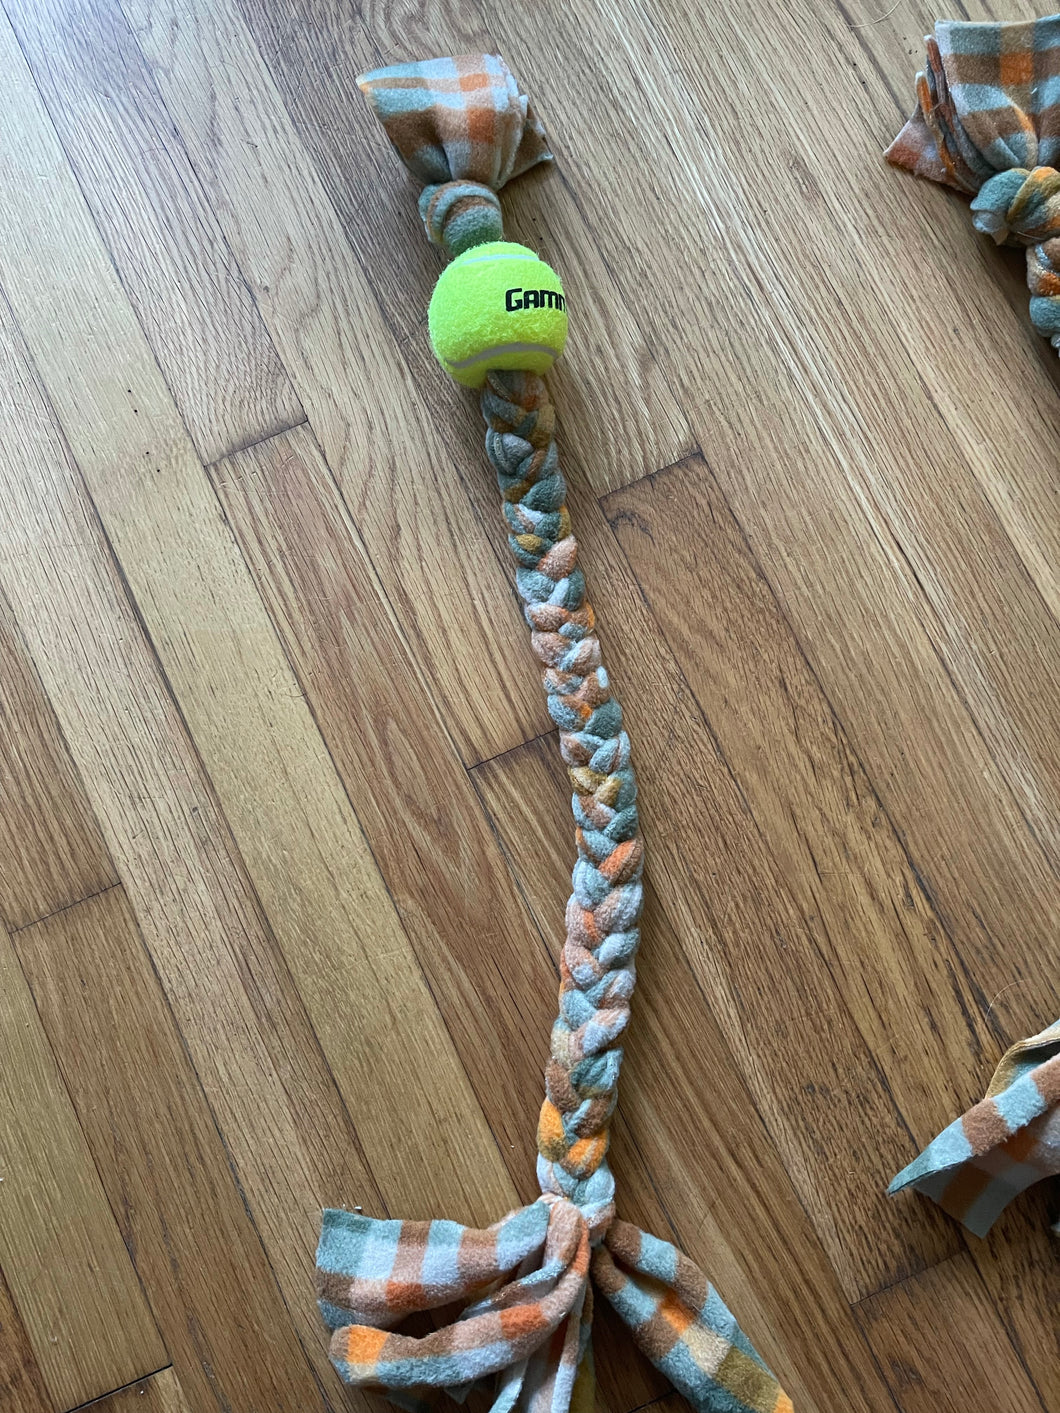 Fall dog tug WITH ball